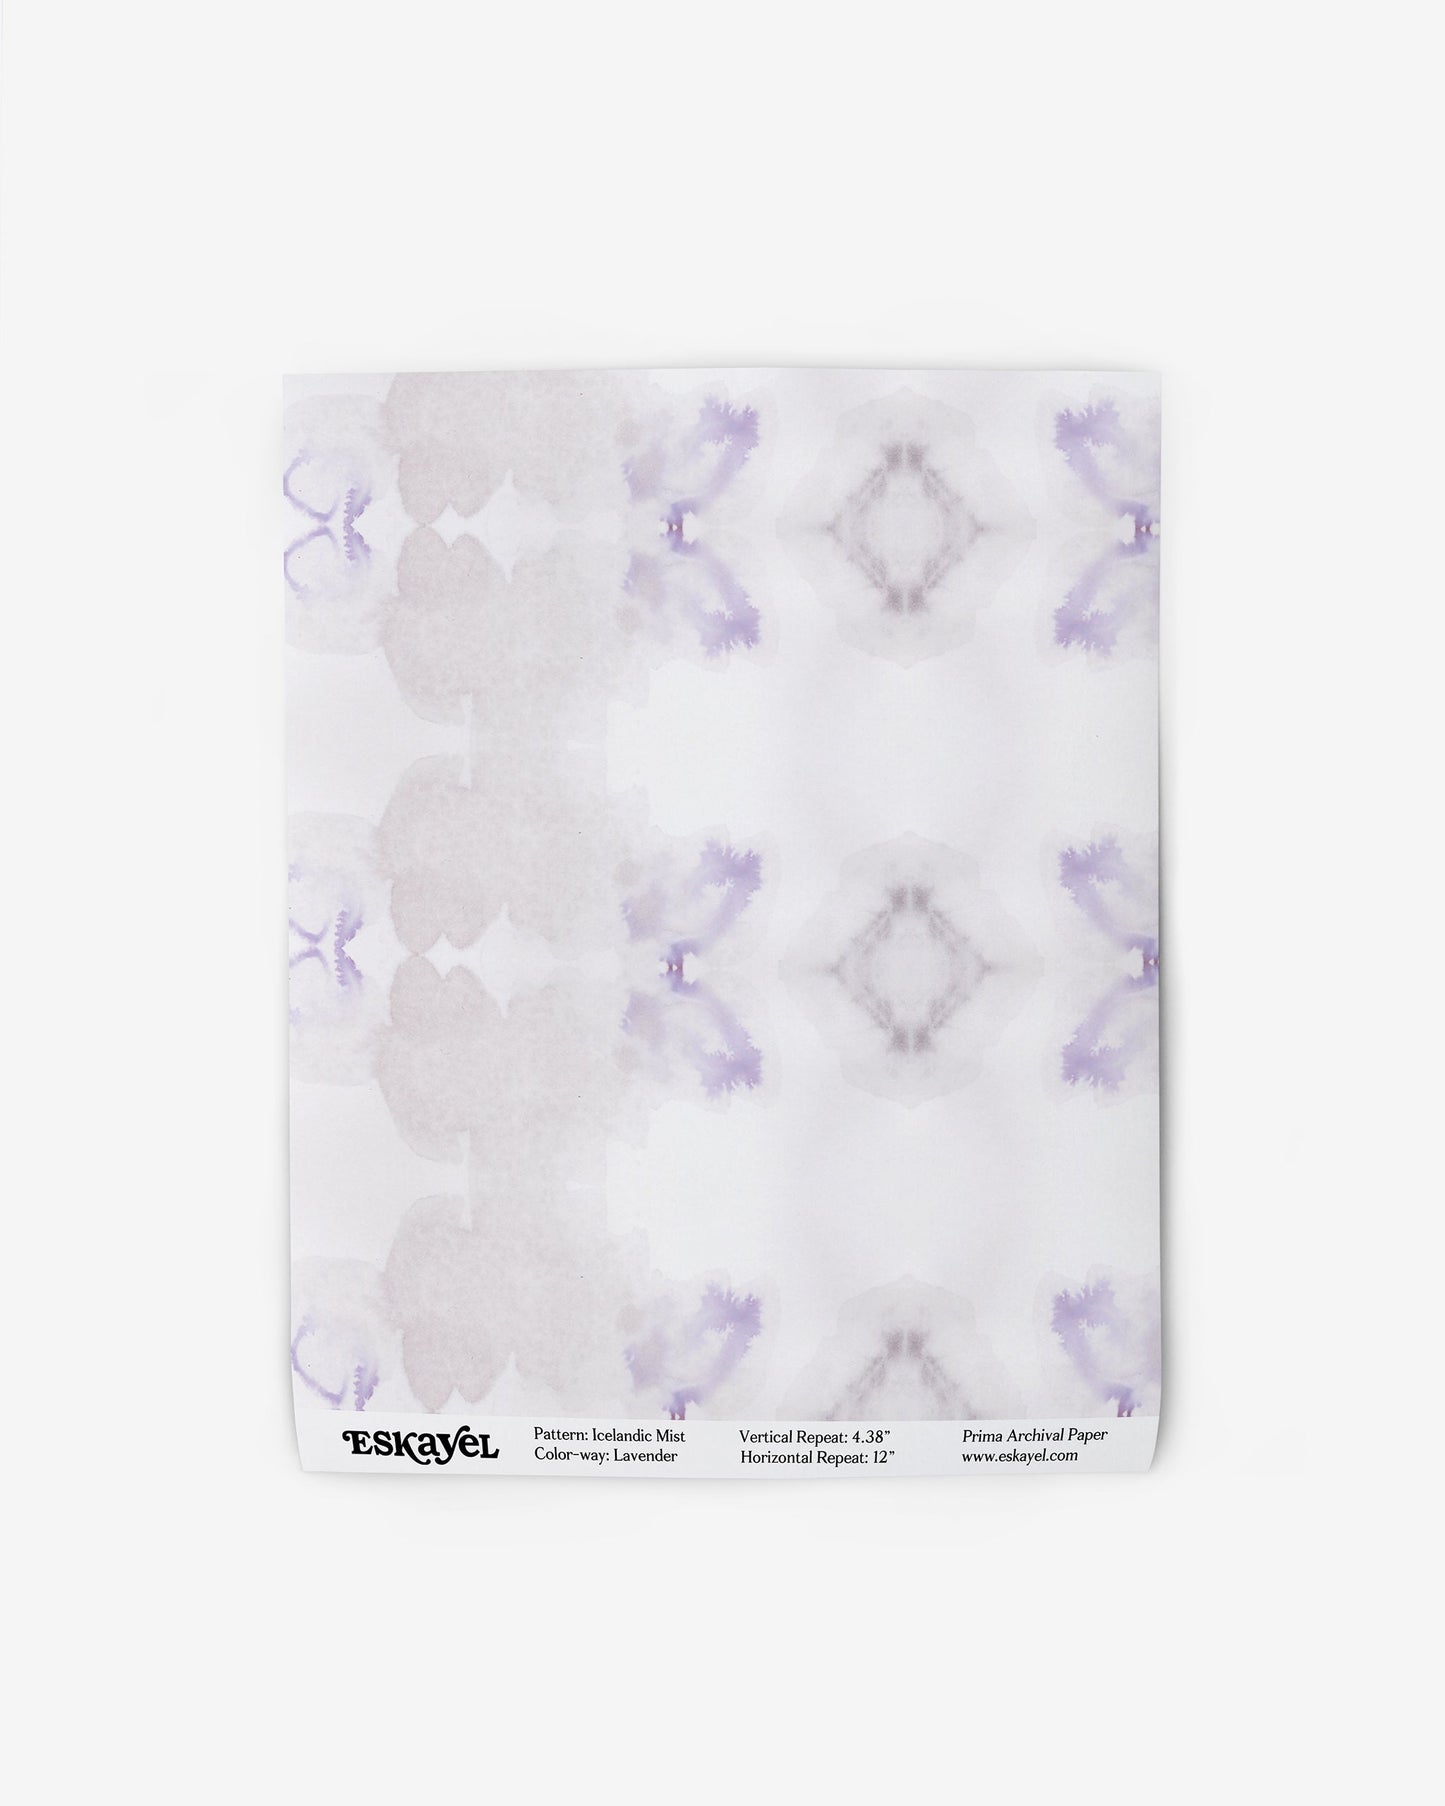 Icelandic Mist Wallpaper Sample||Lavender